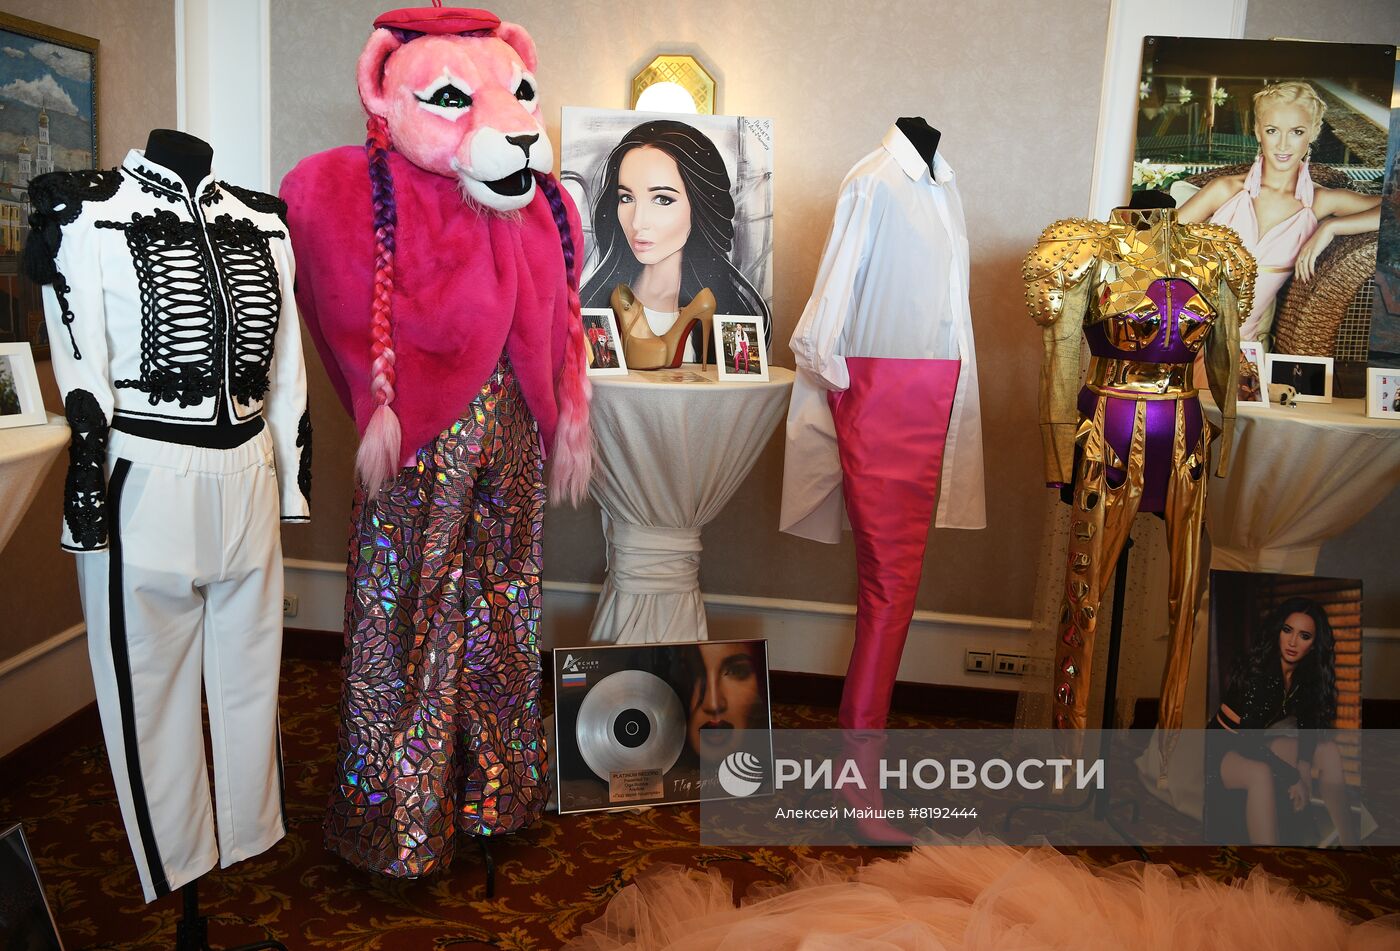 Выставка в честь 18-летия работы Ольги Бузовой в российском шоу-бизнесе